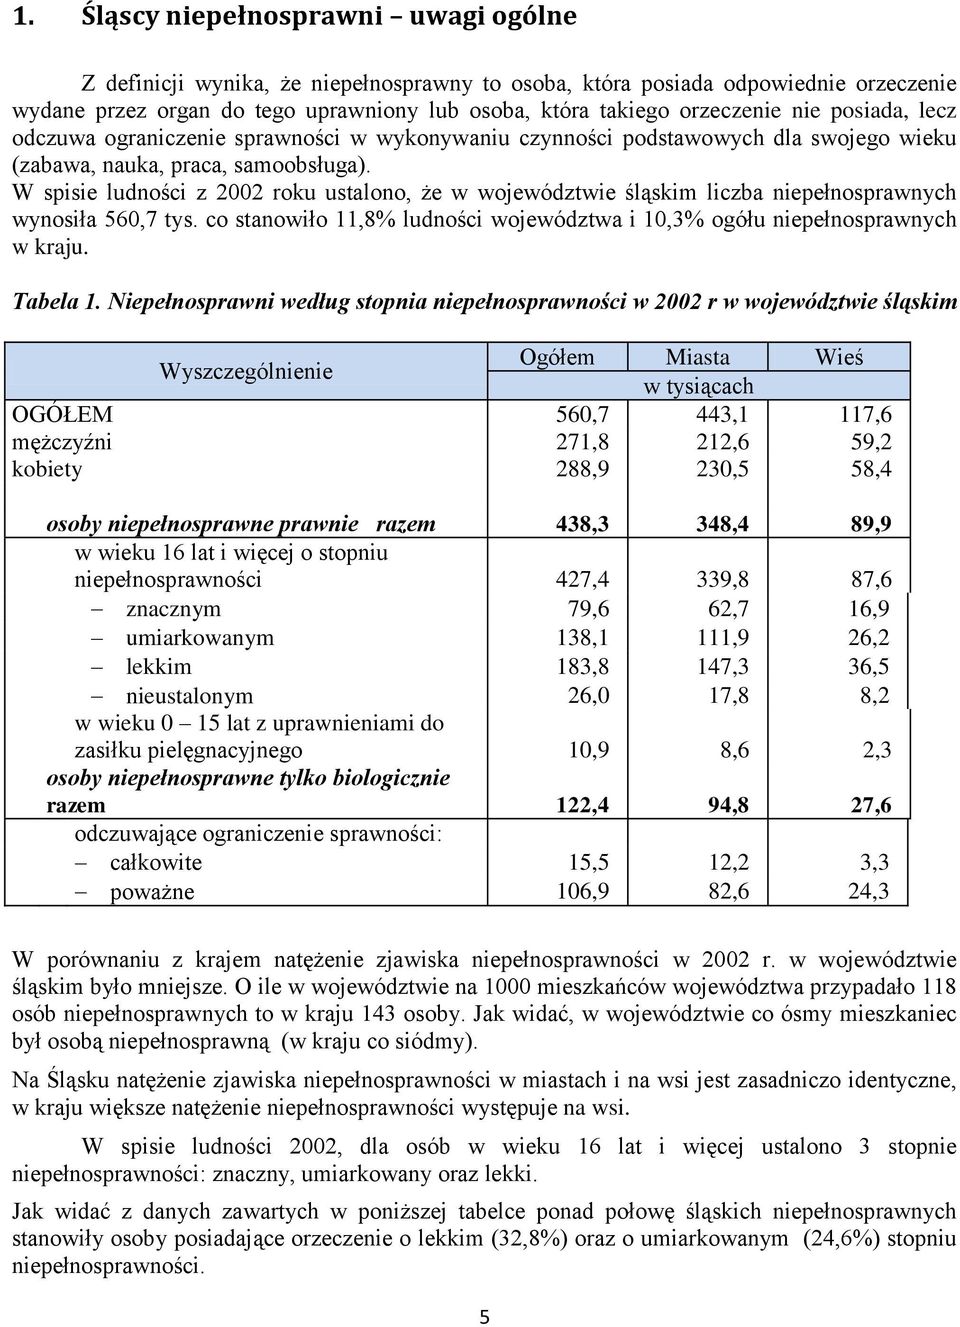 W spisie ludności z 2002 roku ustalono, że w województwie śląskim liczba niepełnosprawnych wynosiła 560,7 tys. co stanowiło 11,8% ludności województwa i 10,3% ogółu niepełnosprawnych w kraju.